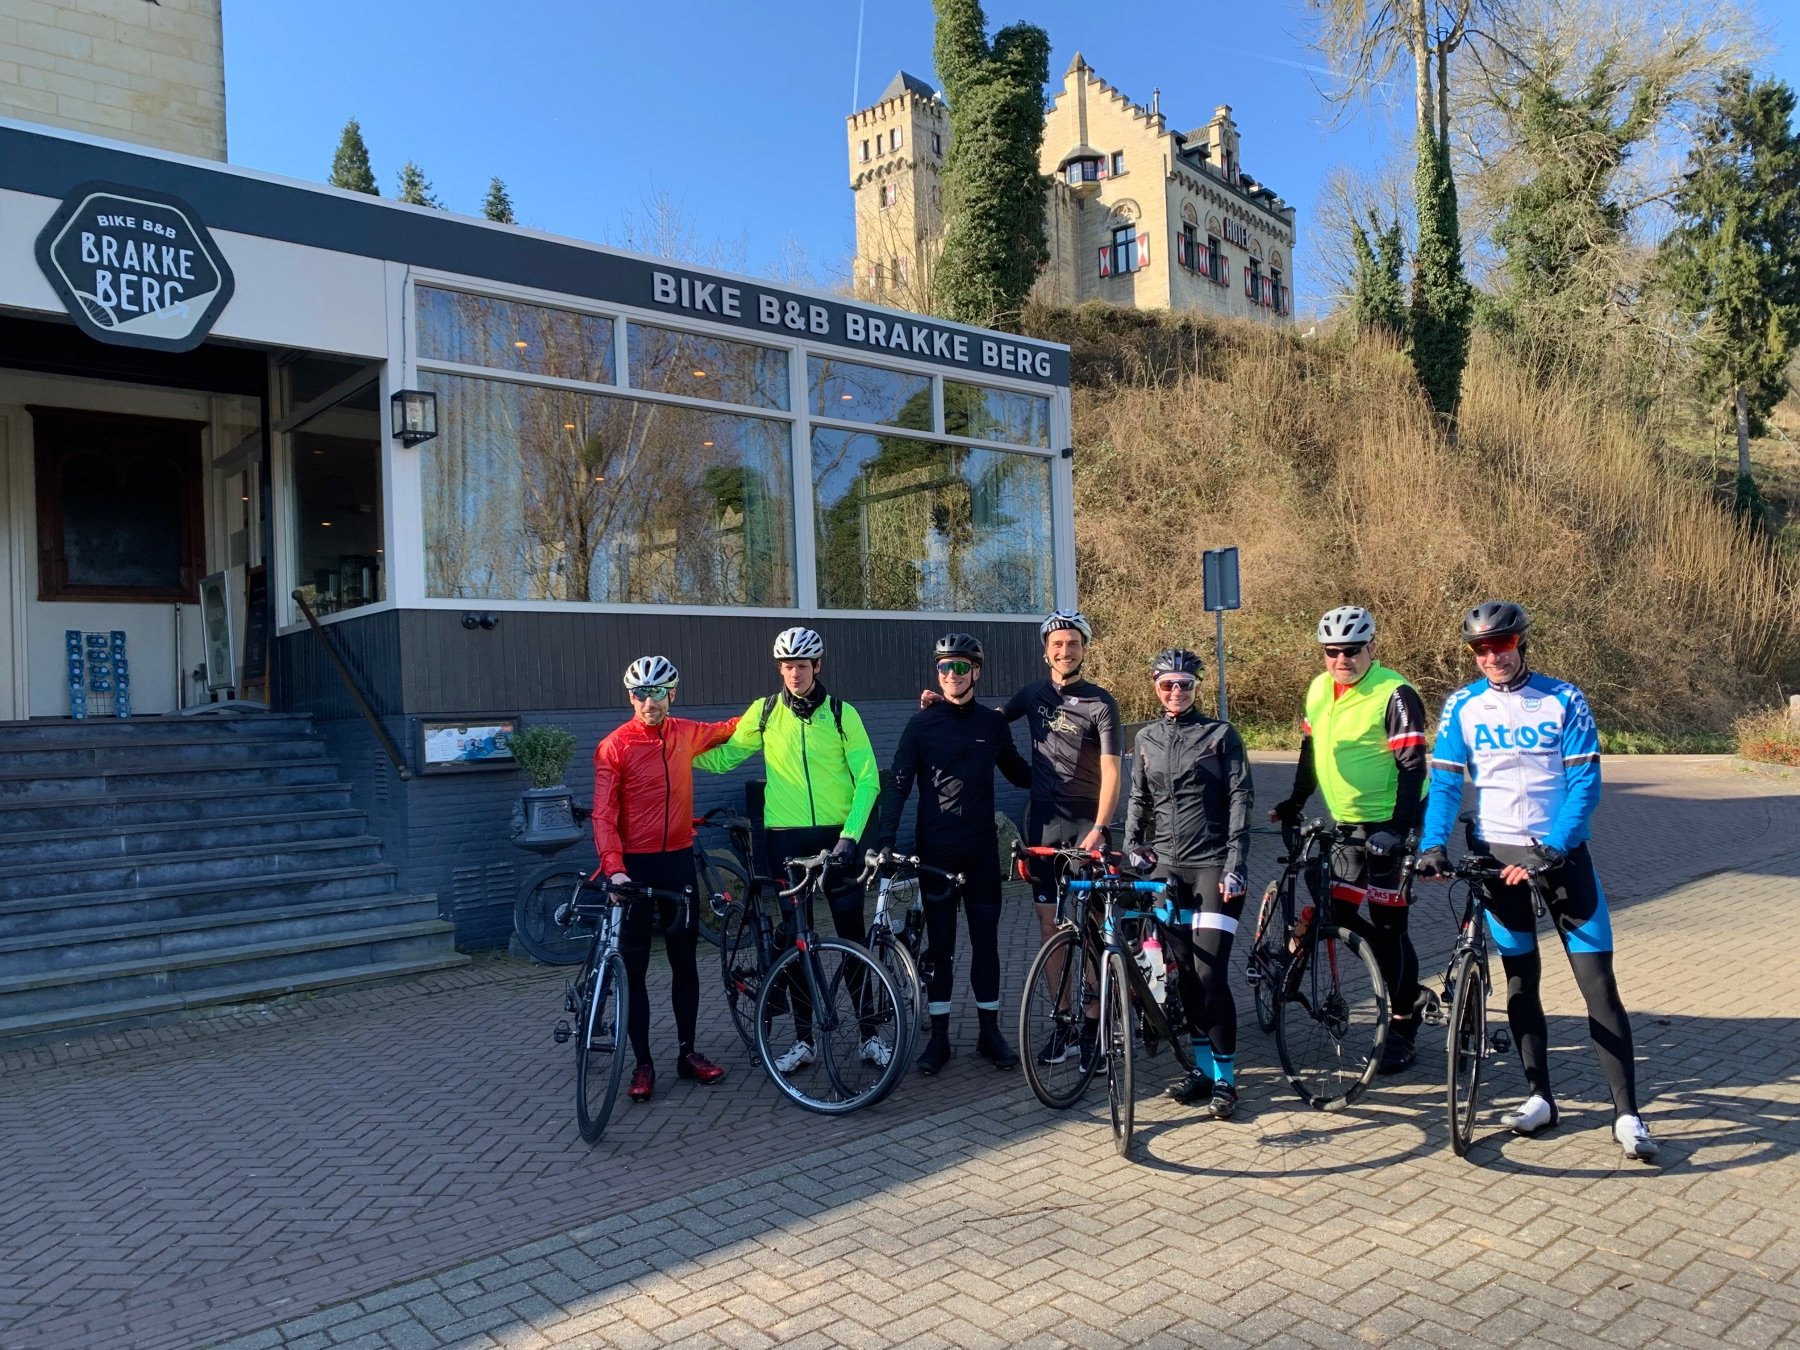 Groep fietsers in lange fietskleding voor De Brakke Berg: een B&B in Zuid-Limburg Nederland